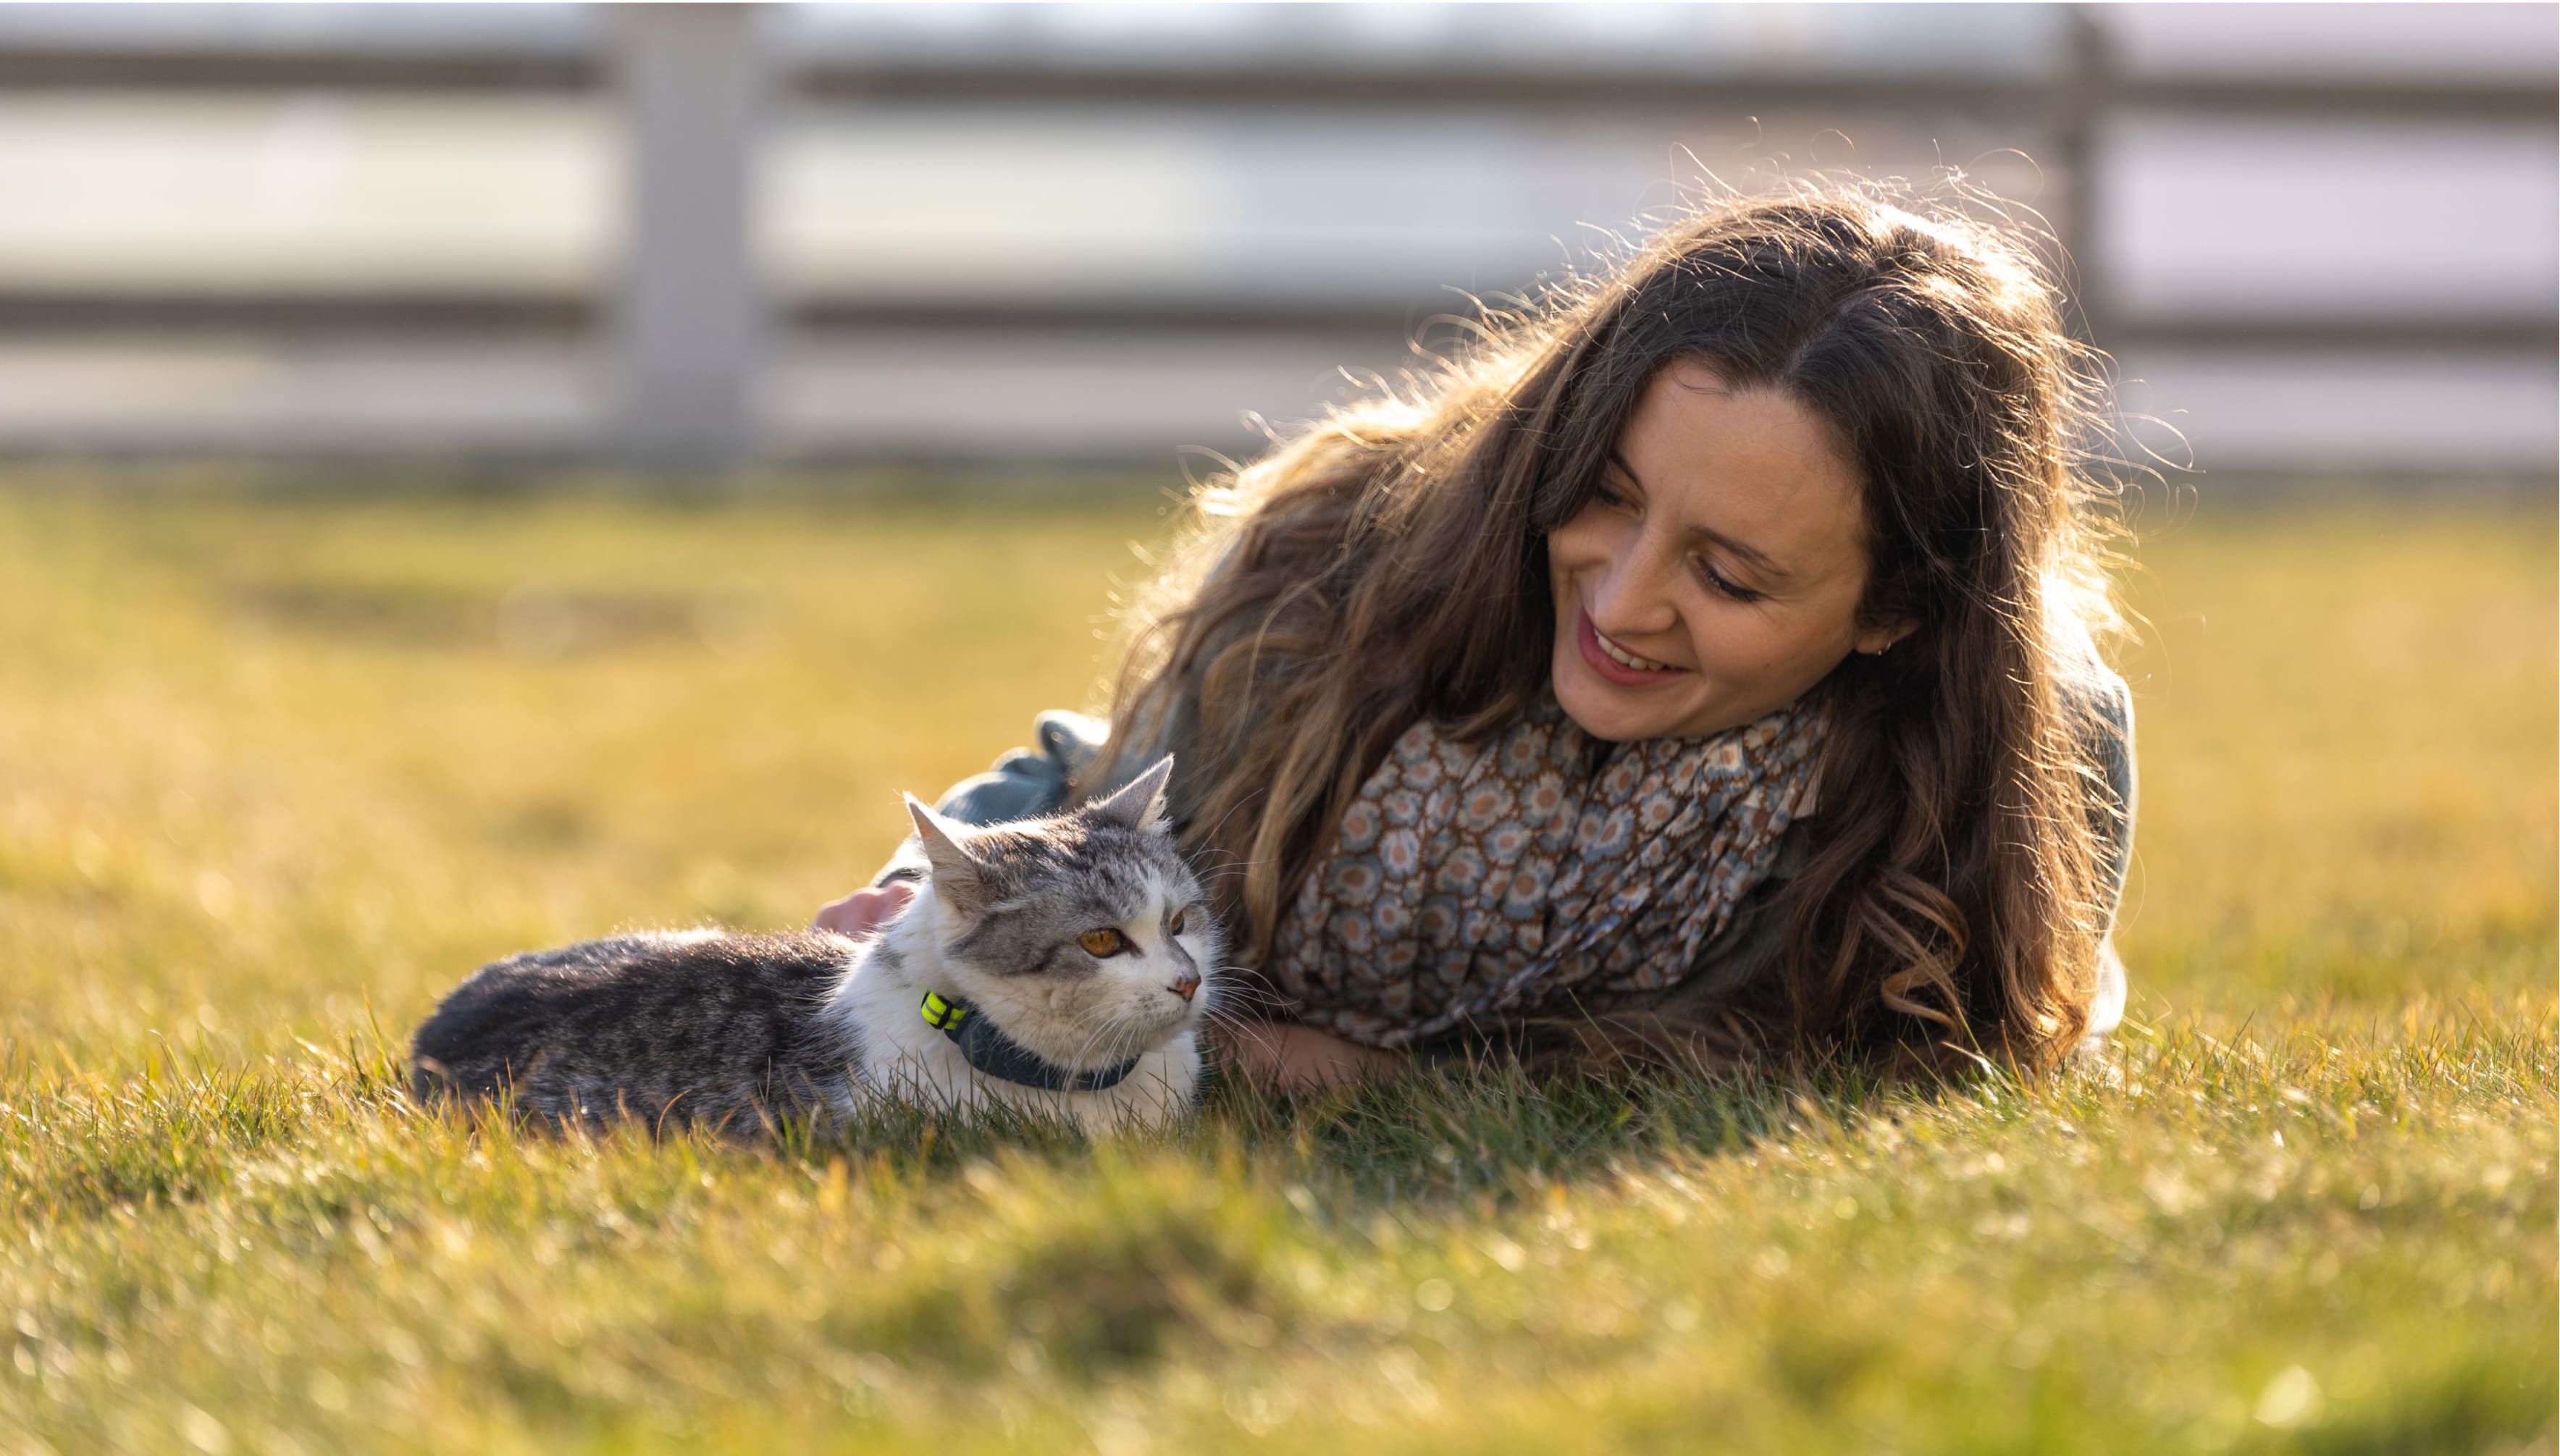 Katze mit Tractive GPS Tracker und Besitzer:in liegen im Gras